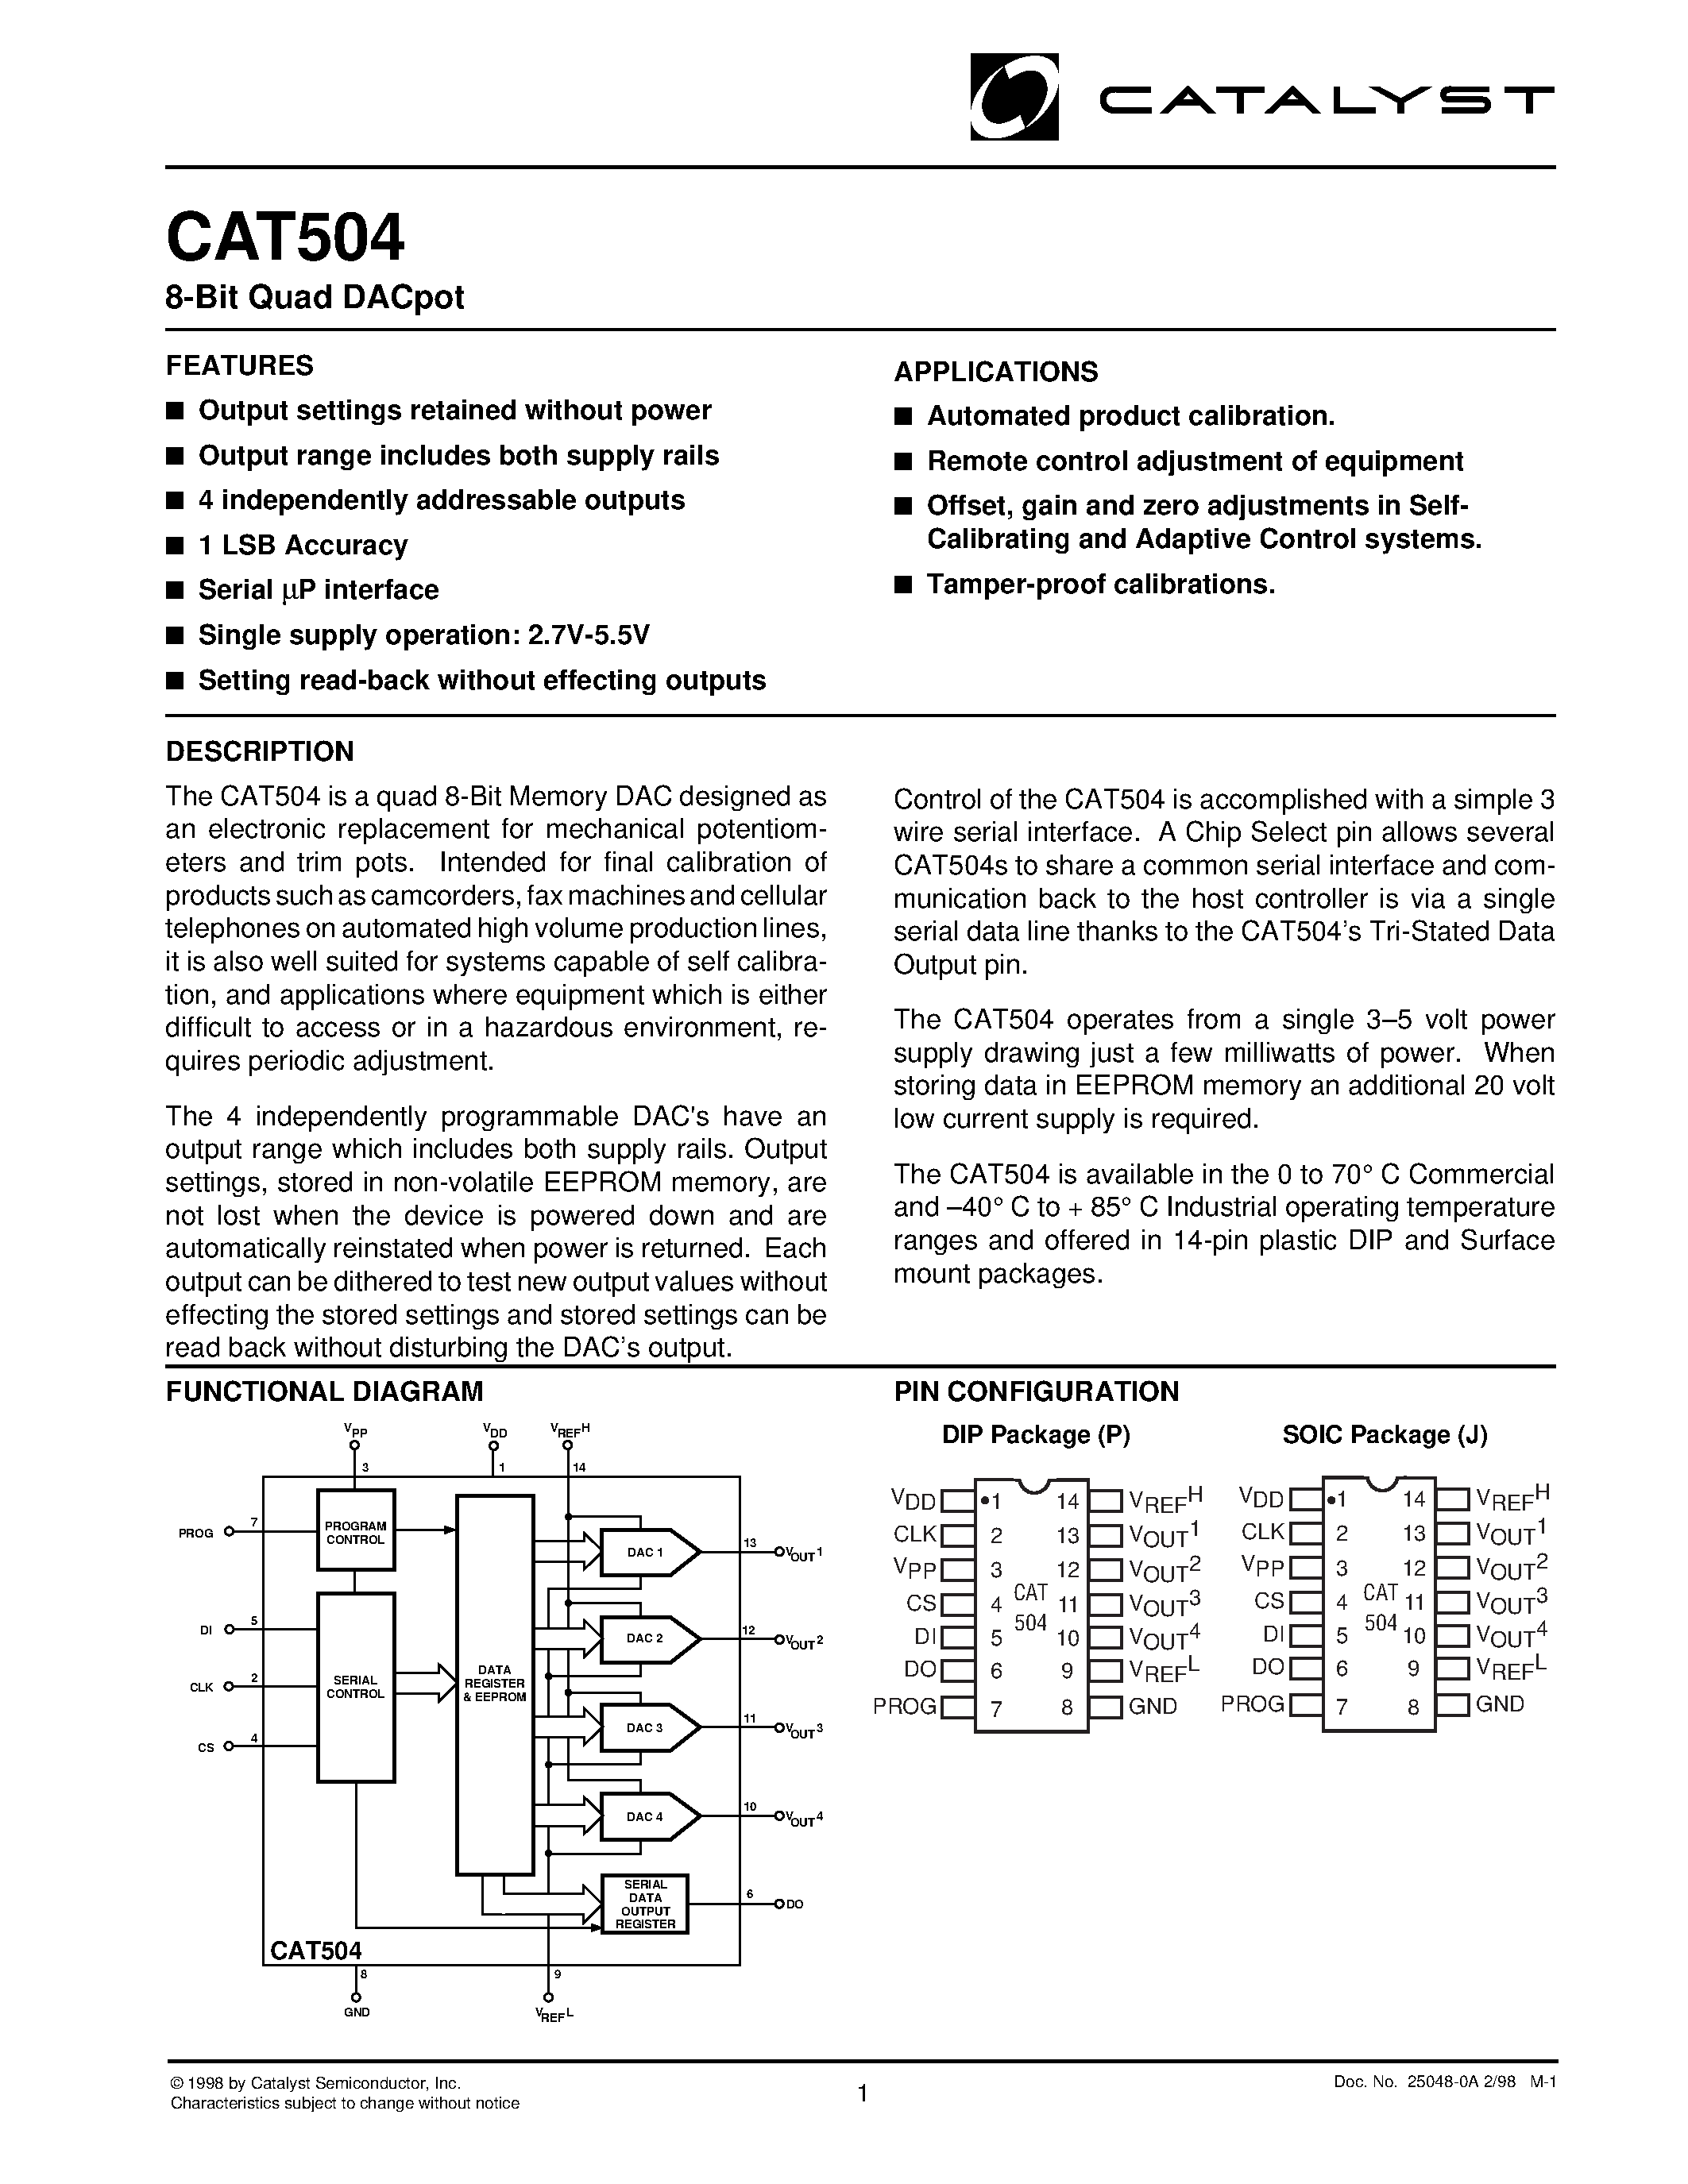 Даташит CAT504 - 8-Bit Quad DACpot страница 1